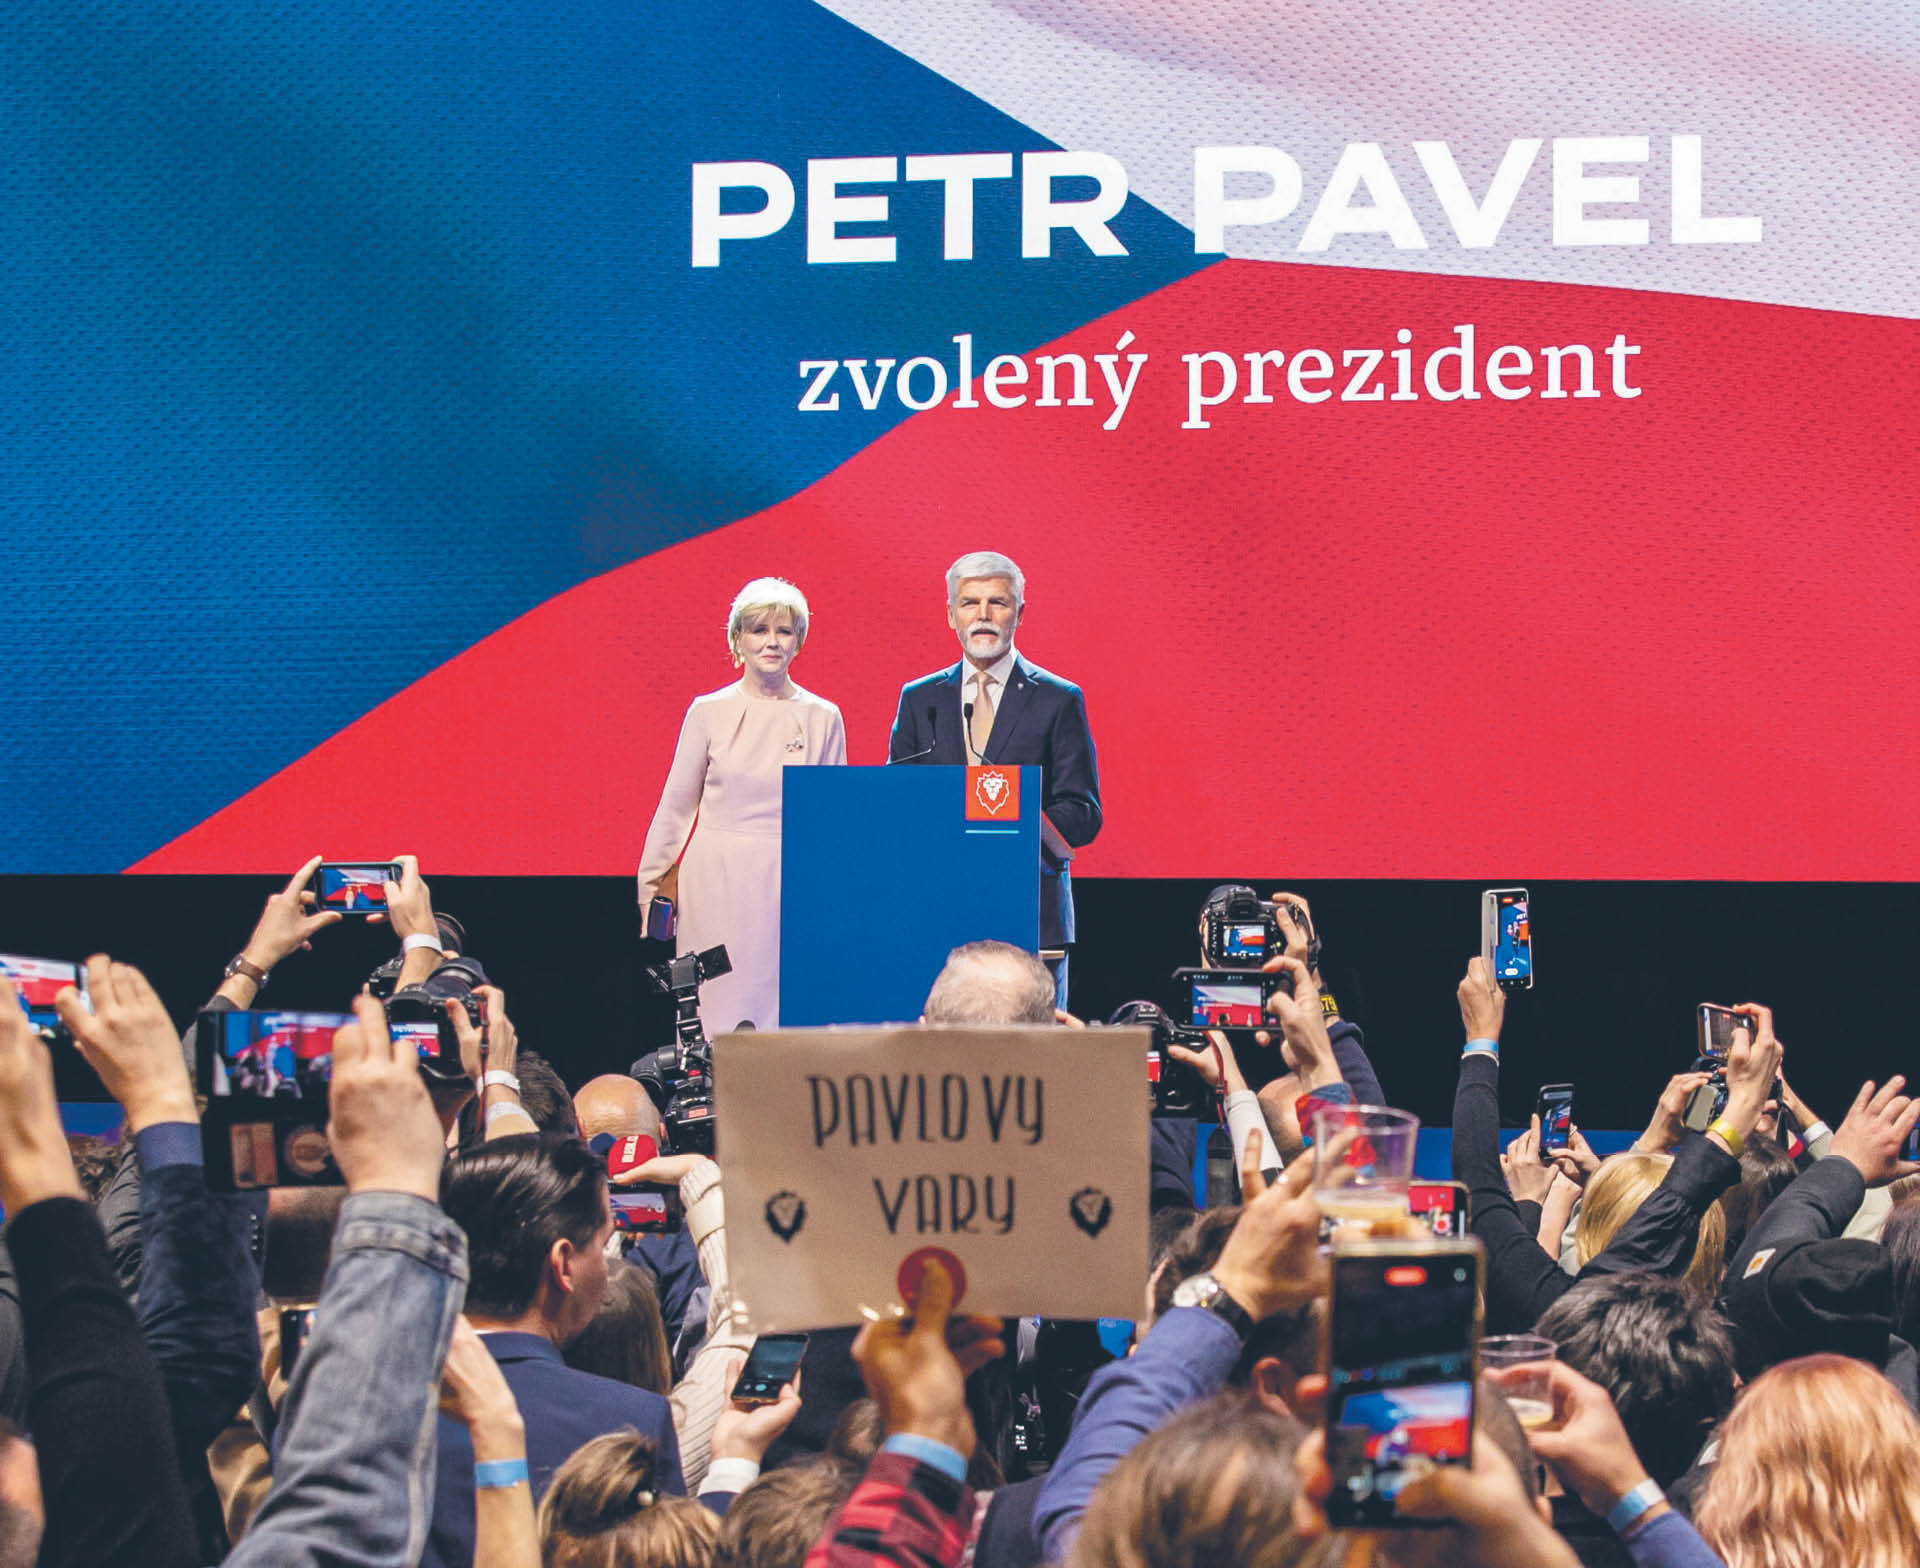 Petr Pavel zapewniał, że chce być prezydentem wszystkich Czechów